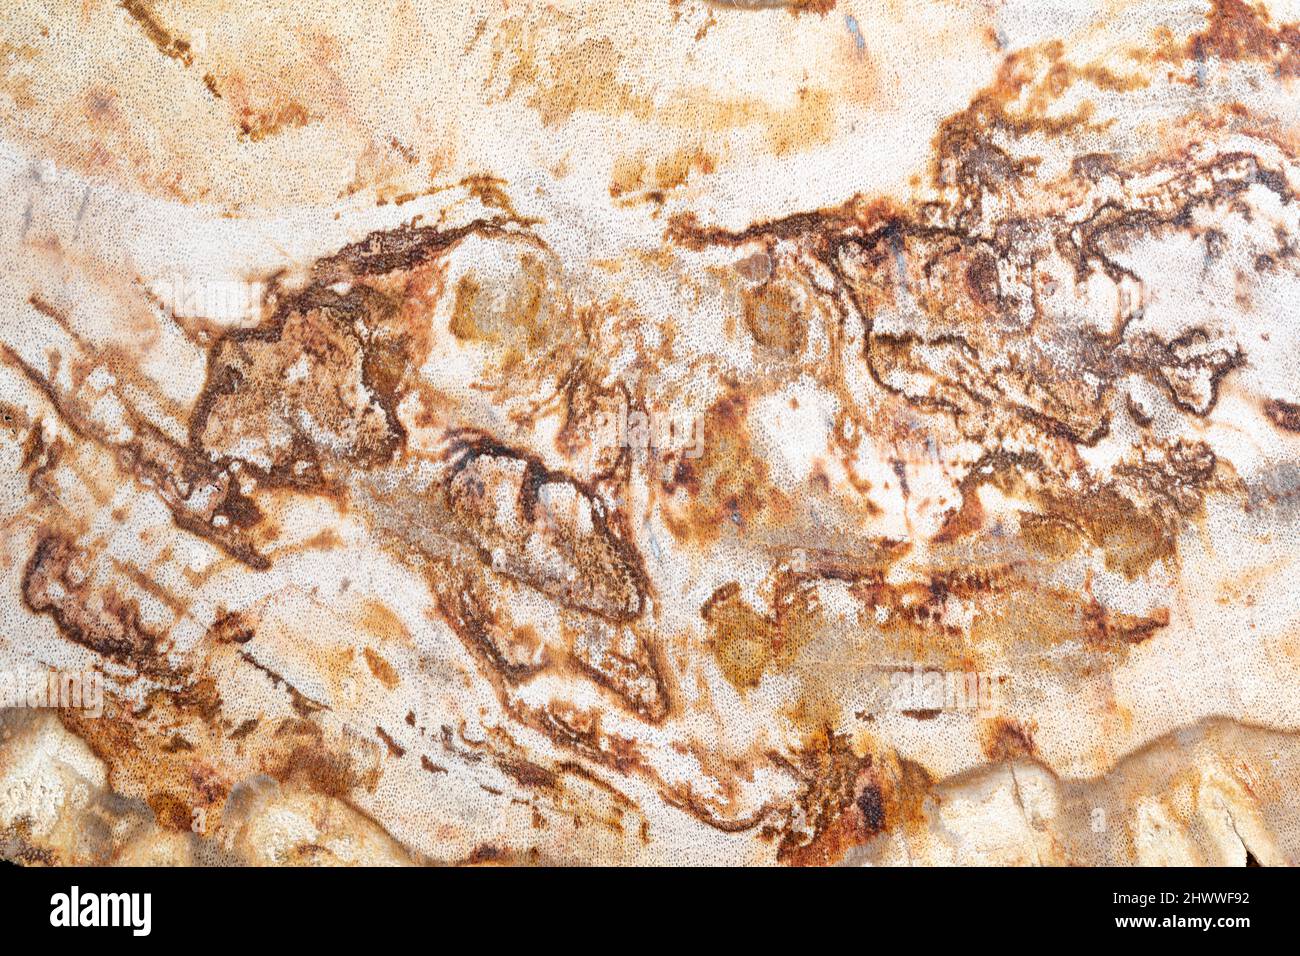 Querschnitt aus versteinertem Holz, zeigt leere Zellen, die von ihrem ursprünglichen organischen Material, Arizona, USA, erschöpft sind, von Dominique Braud/Dembinsky Photo Assoc Stockfoto